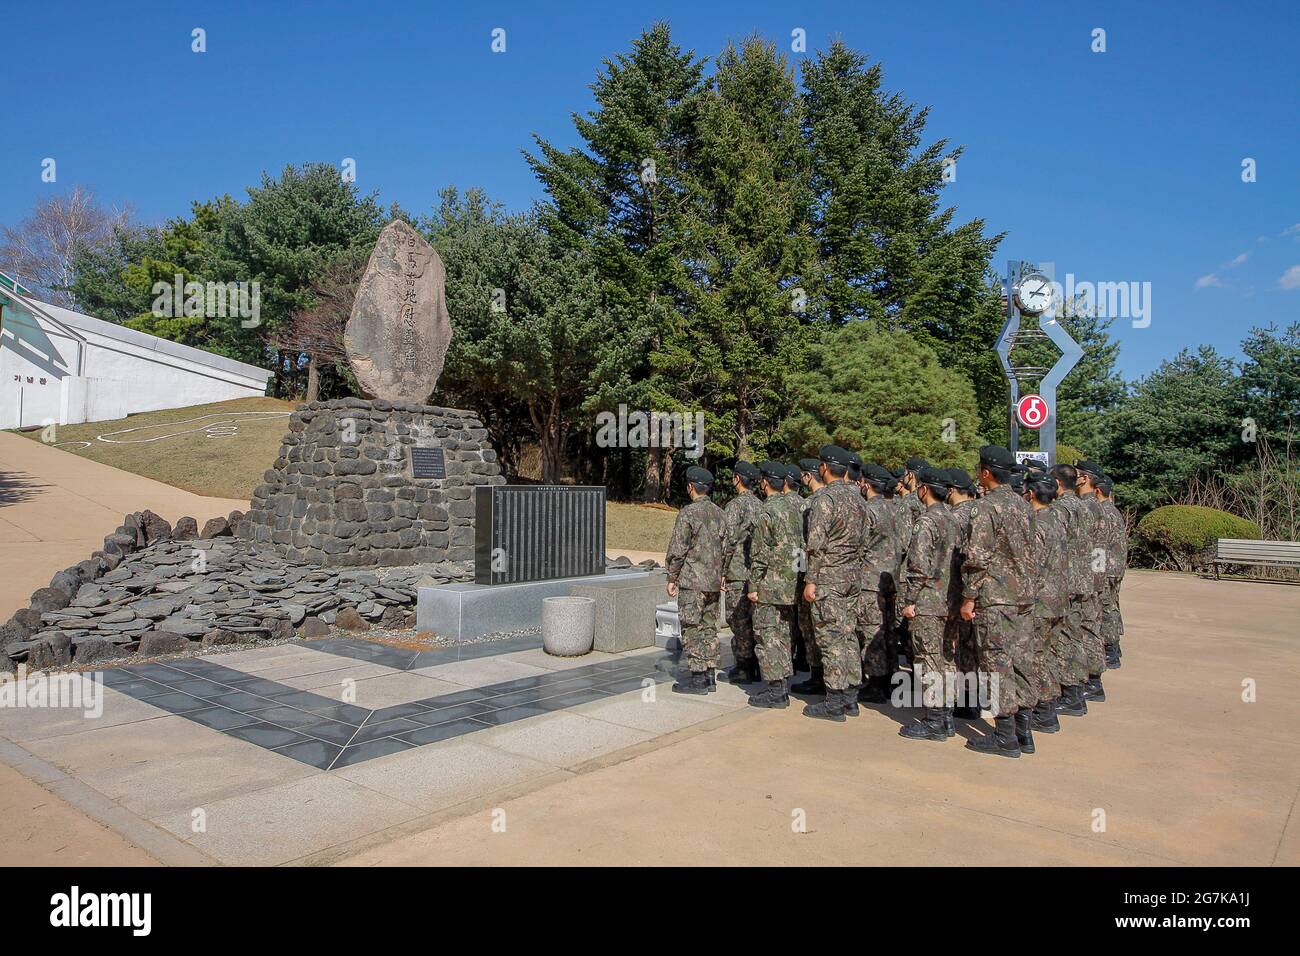 Le 11 avril 2018-Goyang, des soldats de l'armée sud-coréenne et sud-coréenne visitent le monument commémoratif de la bataille des chevaux blancs à Cheorwon, en Corée du Sud. La bataille de White Horse fut une autre d'une série de batailles sanglantes pour les positions dominantes sur les collines pendant la guerre de Corée. Baengma-goji était une colline de 395 mètres (1,296 pieds) dans le triangle de fer, formé par Pyonggang à son sommet et Gimhwa-eup et Cheorwon à sa base, était une voie de transport stratégique dans la région centrale de la péninsule coréenne. White Horse était la crête d'une masse de colline boisée qui s'étendait du nord-ouest au sud-est sur environ deux milles Banque D'Images